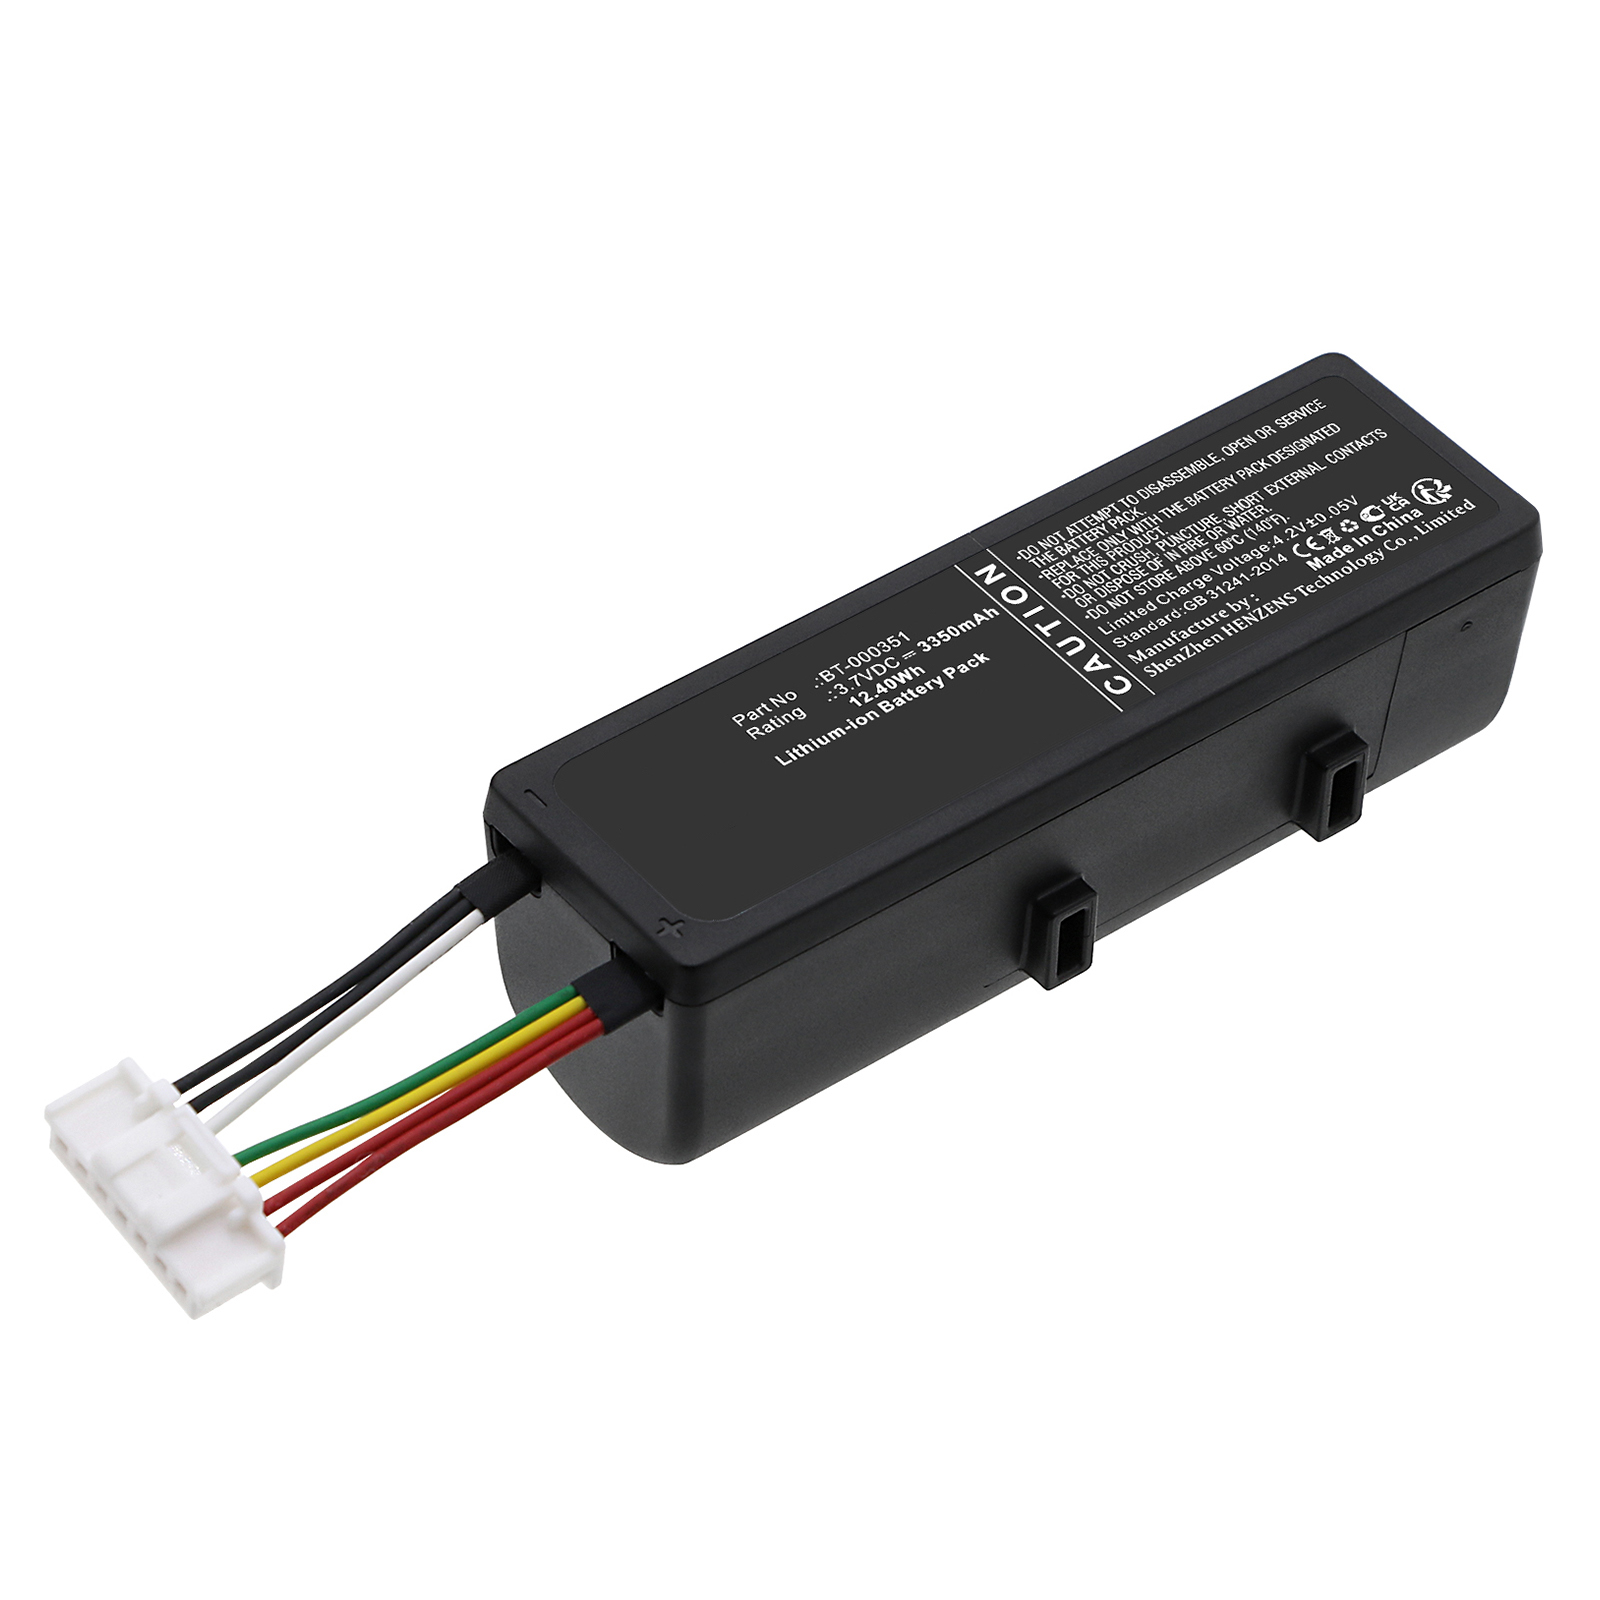 Synergy Digital Barcode Scanner Battery, Compatible with Zebra BT-000351 Barcode Scanner Battery (Li-ion, 3.7V, 3350mAh)